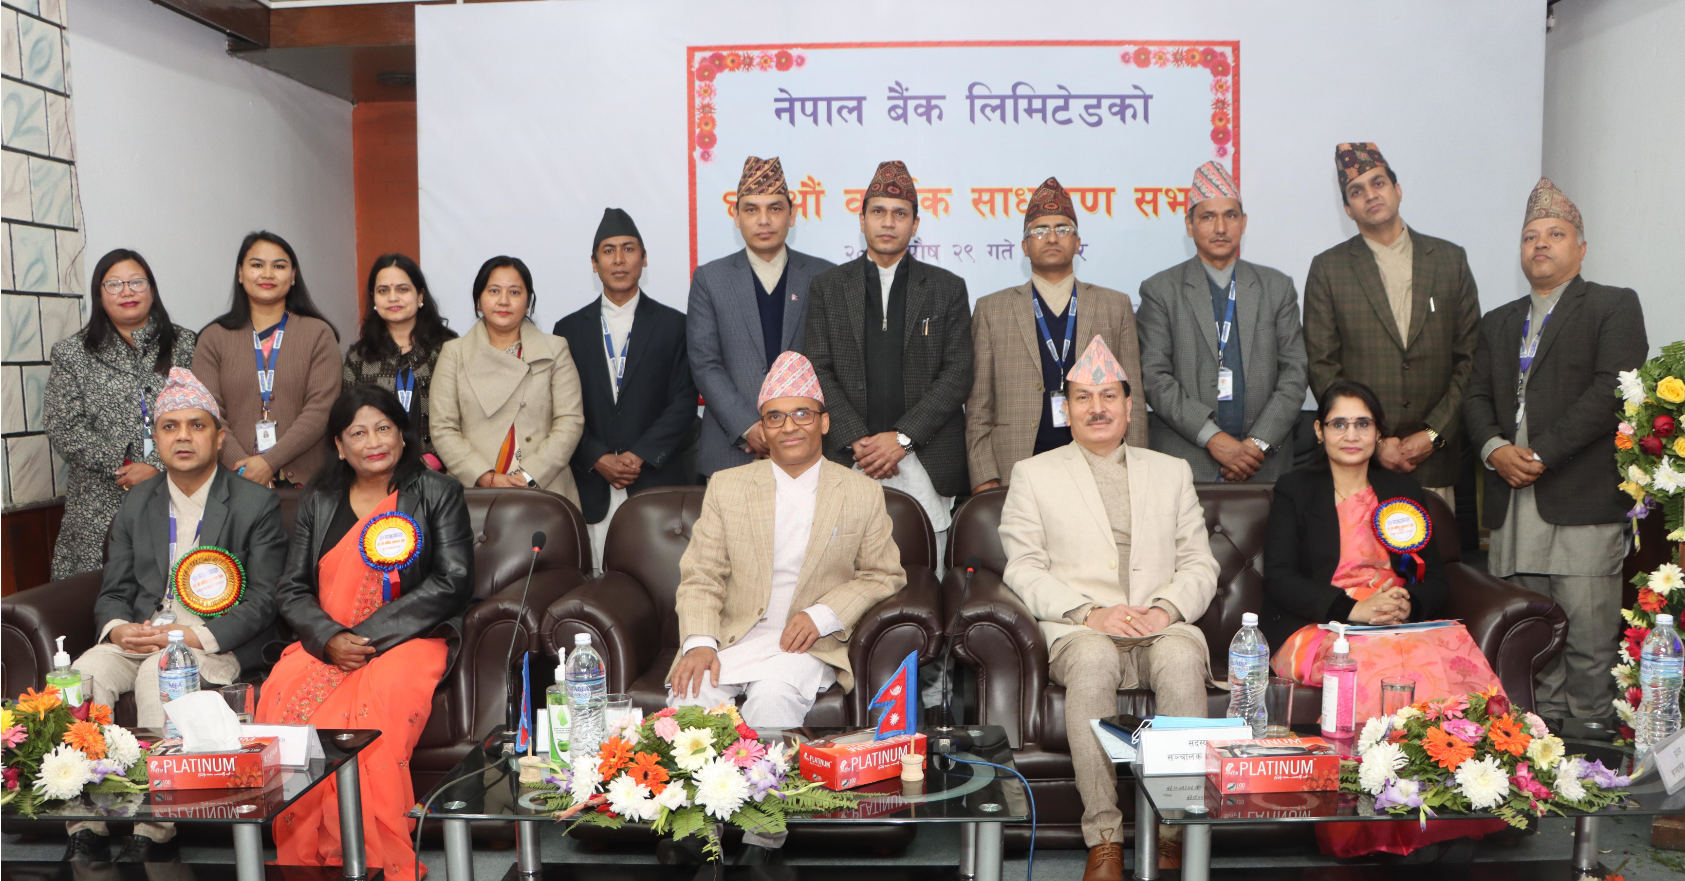 नेपाल बैंकको साधारण सभा सम्पन्न, १६ प्रतिशत लाभांश पारित